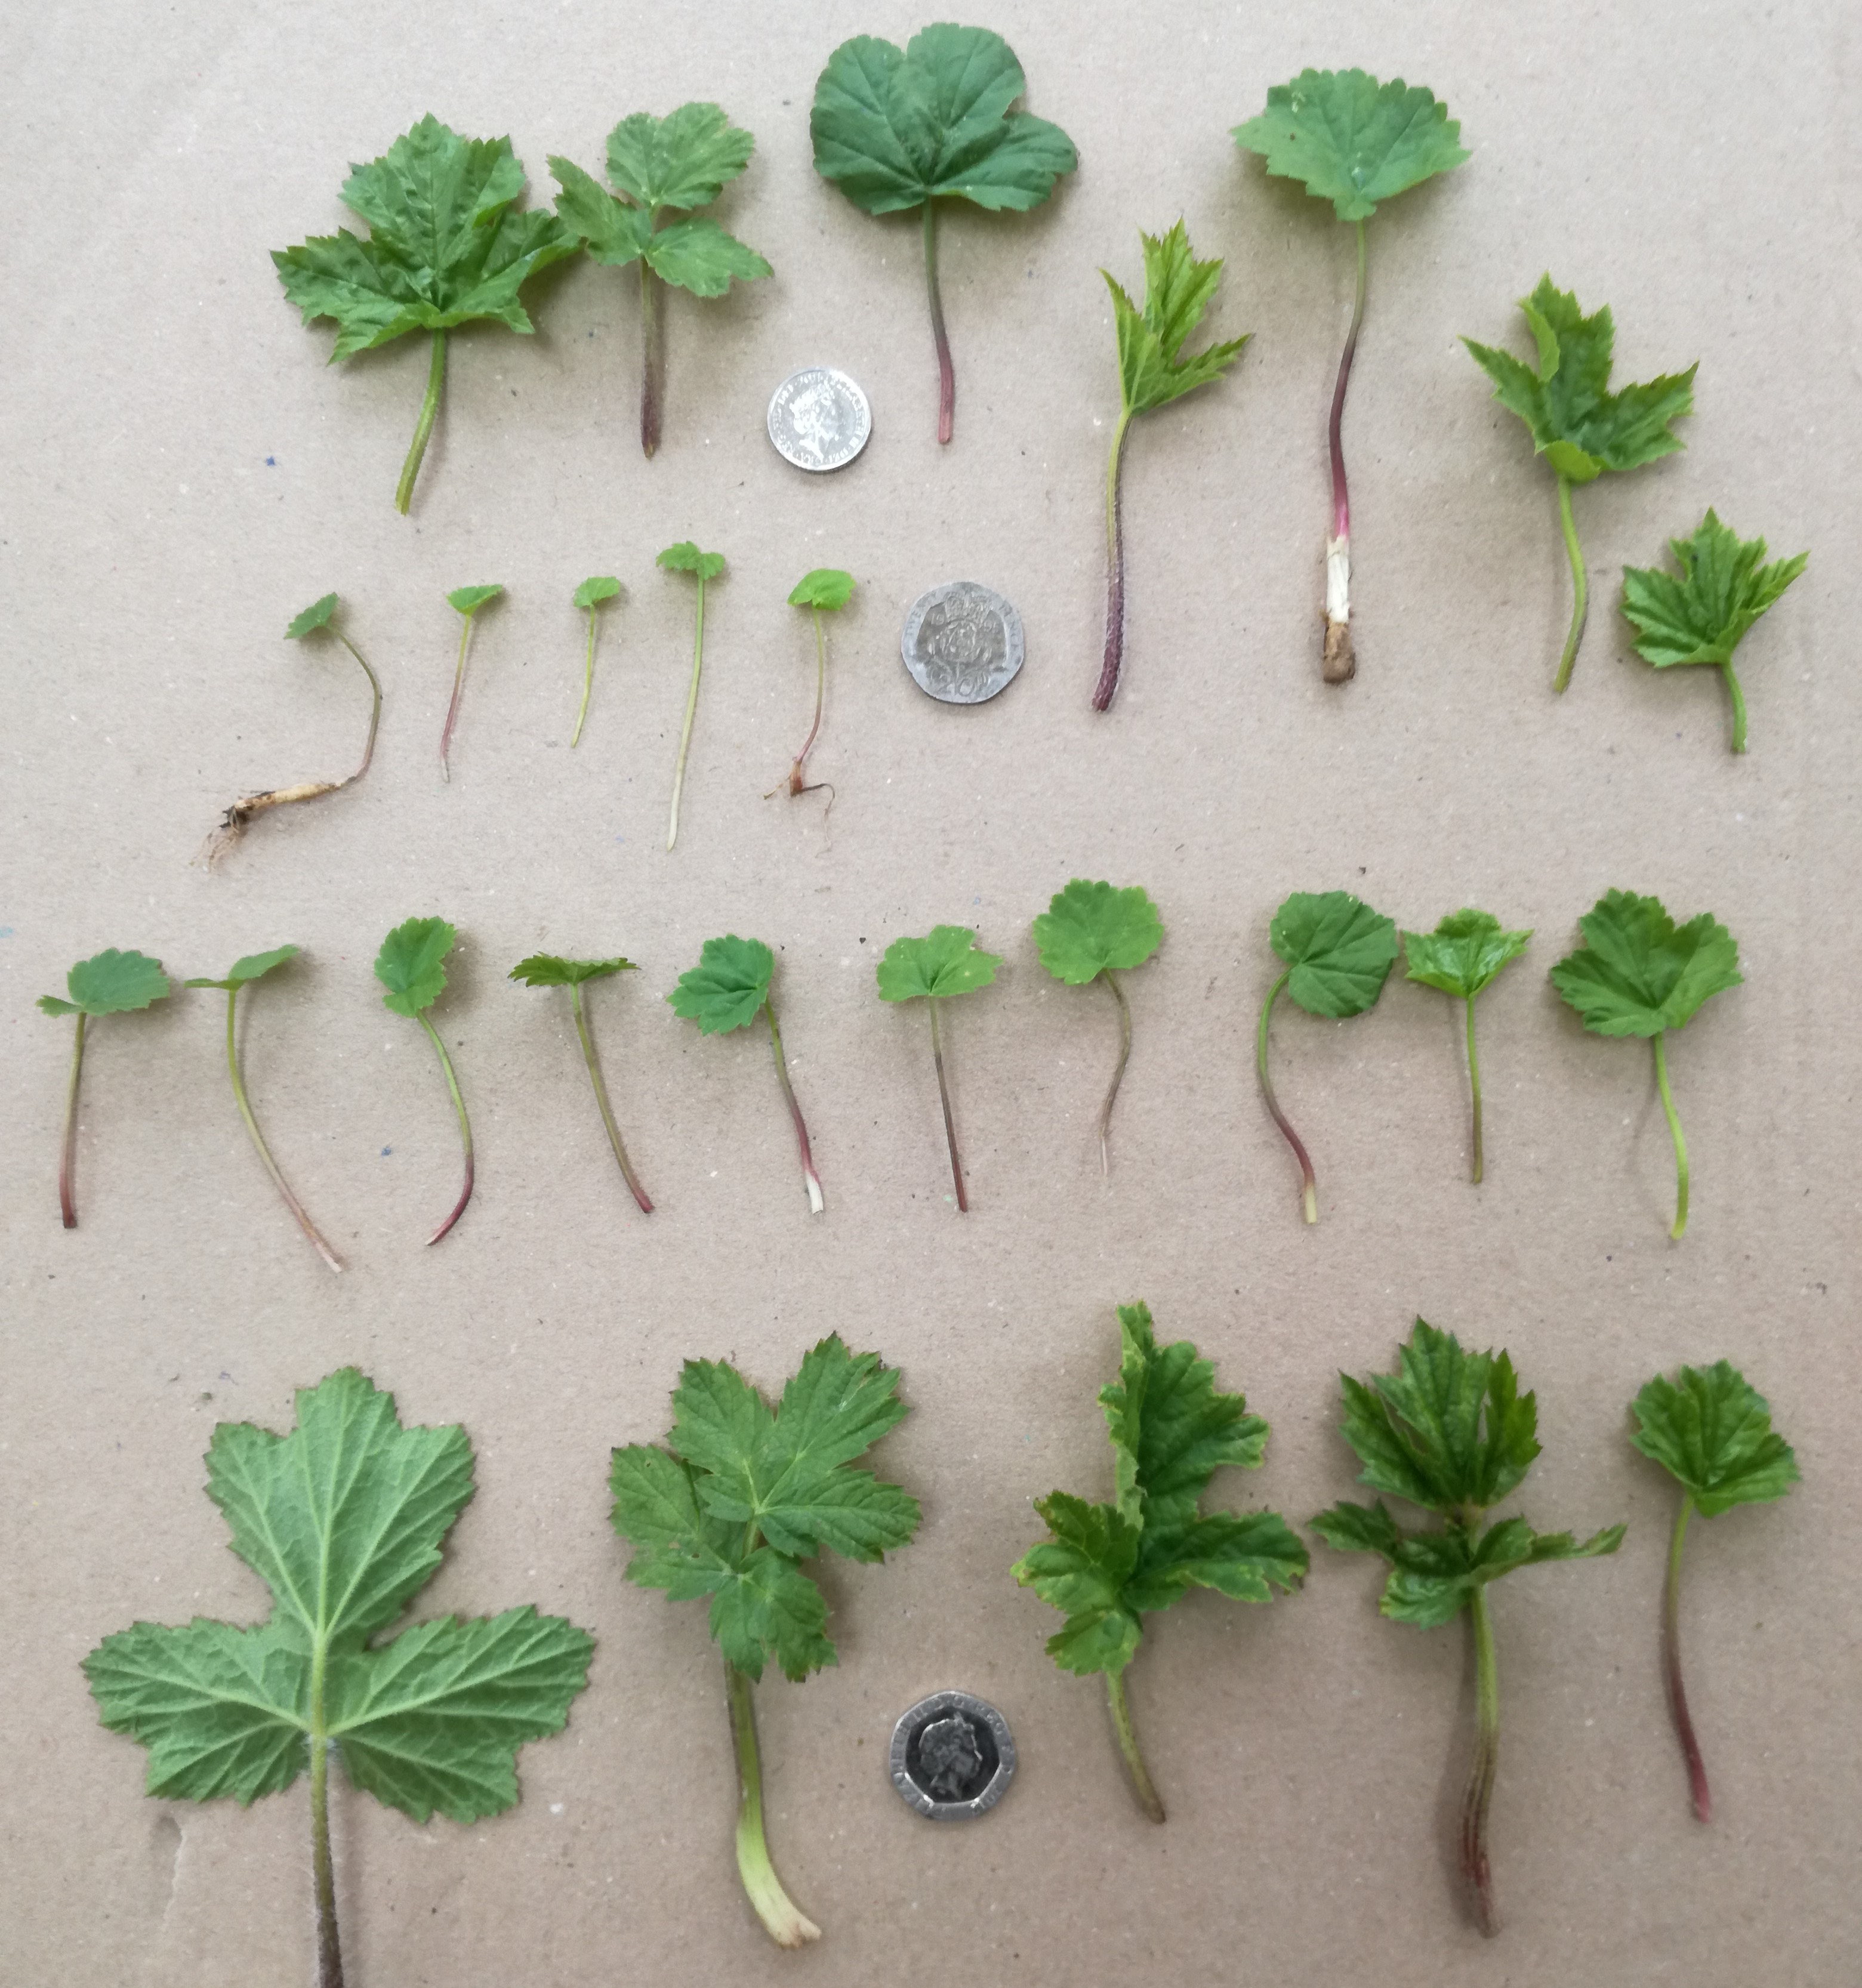 Variation in hogweed seedling morphology